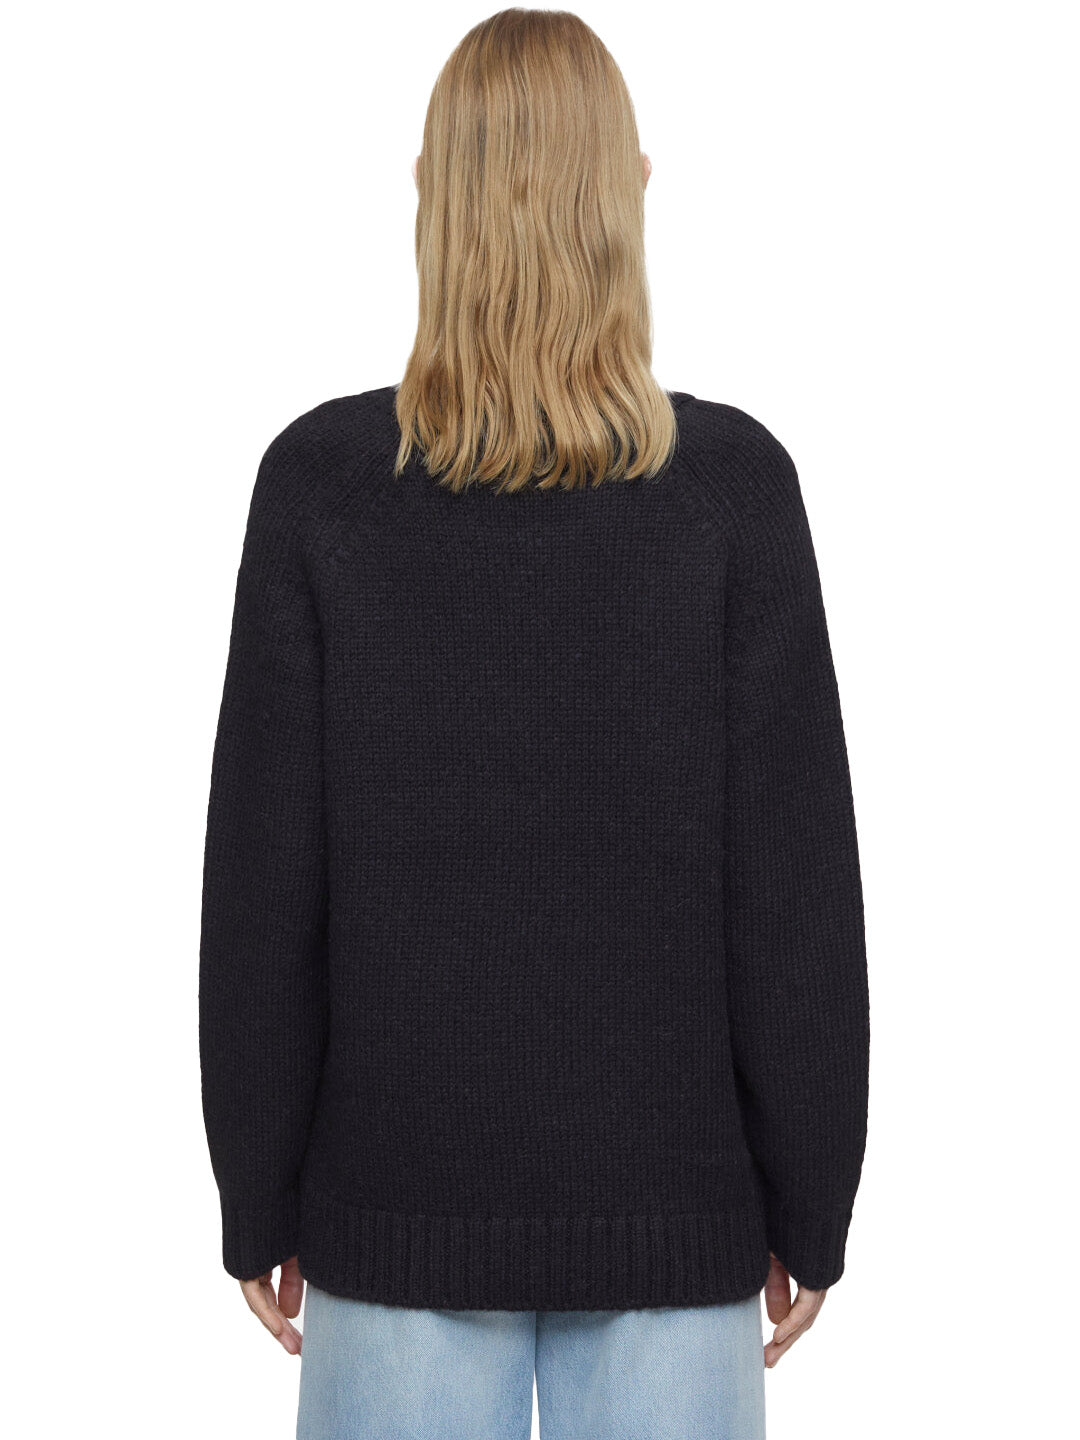 Alpaca Mix Sweater in Black